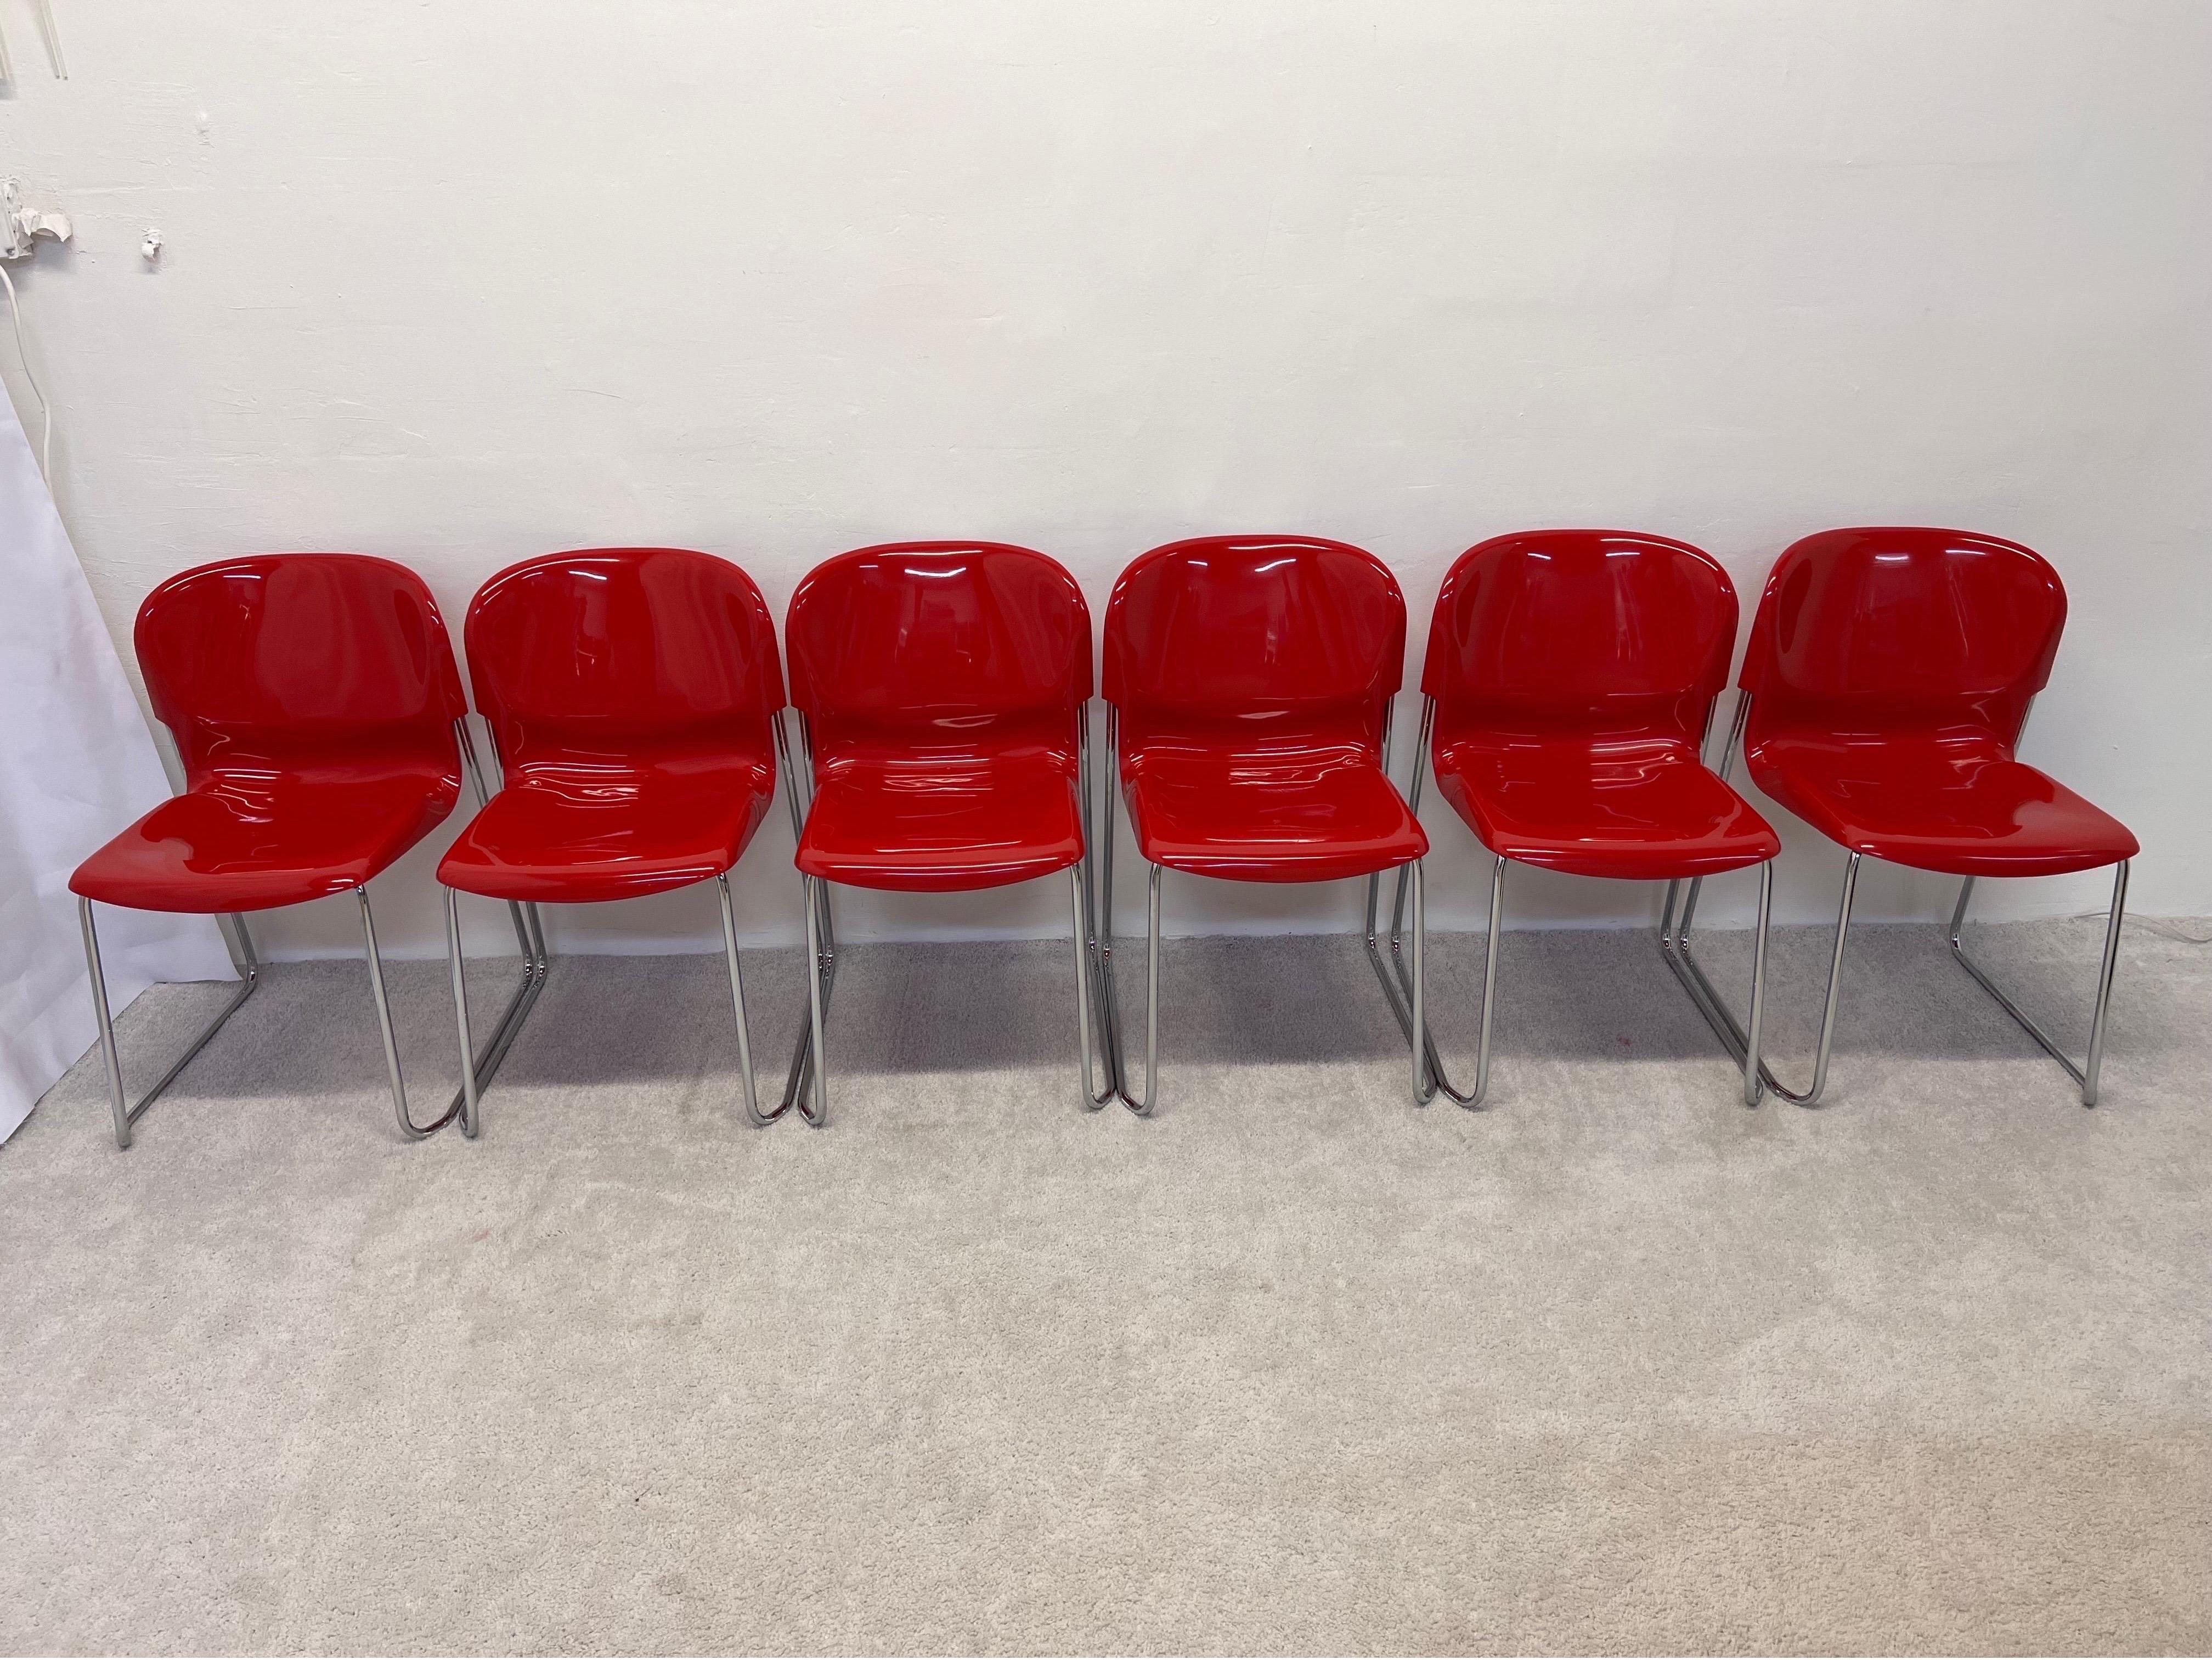 Satz von sechs stapelbaren Esszimmerstühlen mit glänzend roten Kunststoffsitzen auf verchromten Rohrbeinen, entworfen von Gerd Lange für Atelier International, 1980er Jahre. Dieses Set wurde ursprünglich in den 1960er Jahren entworfen und in den